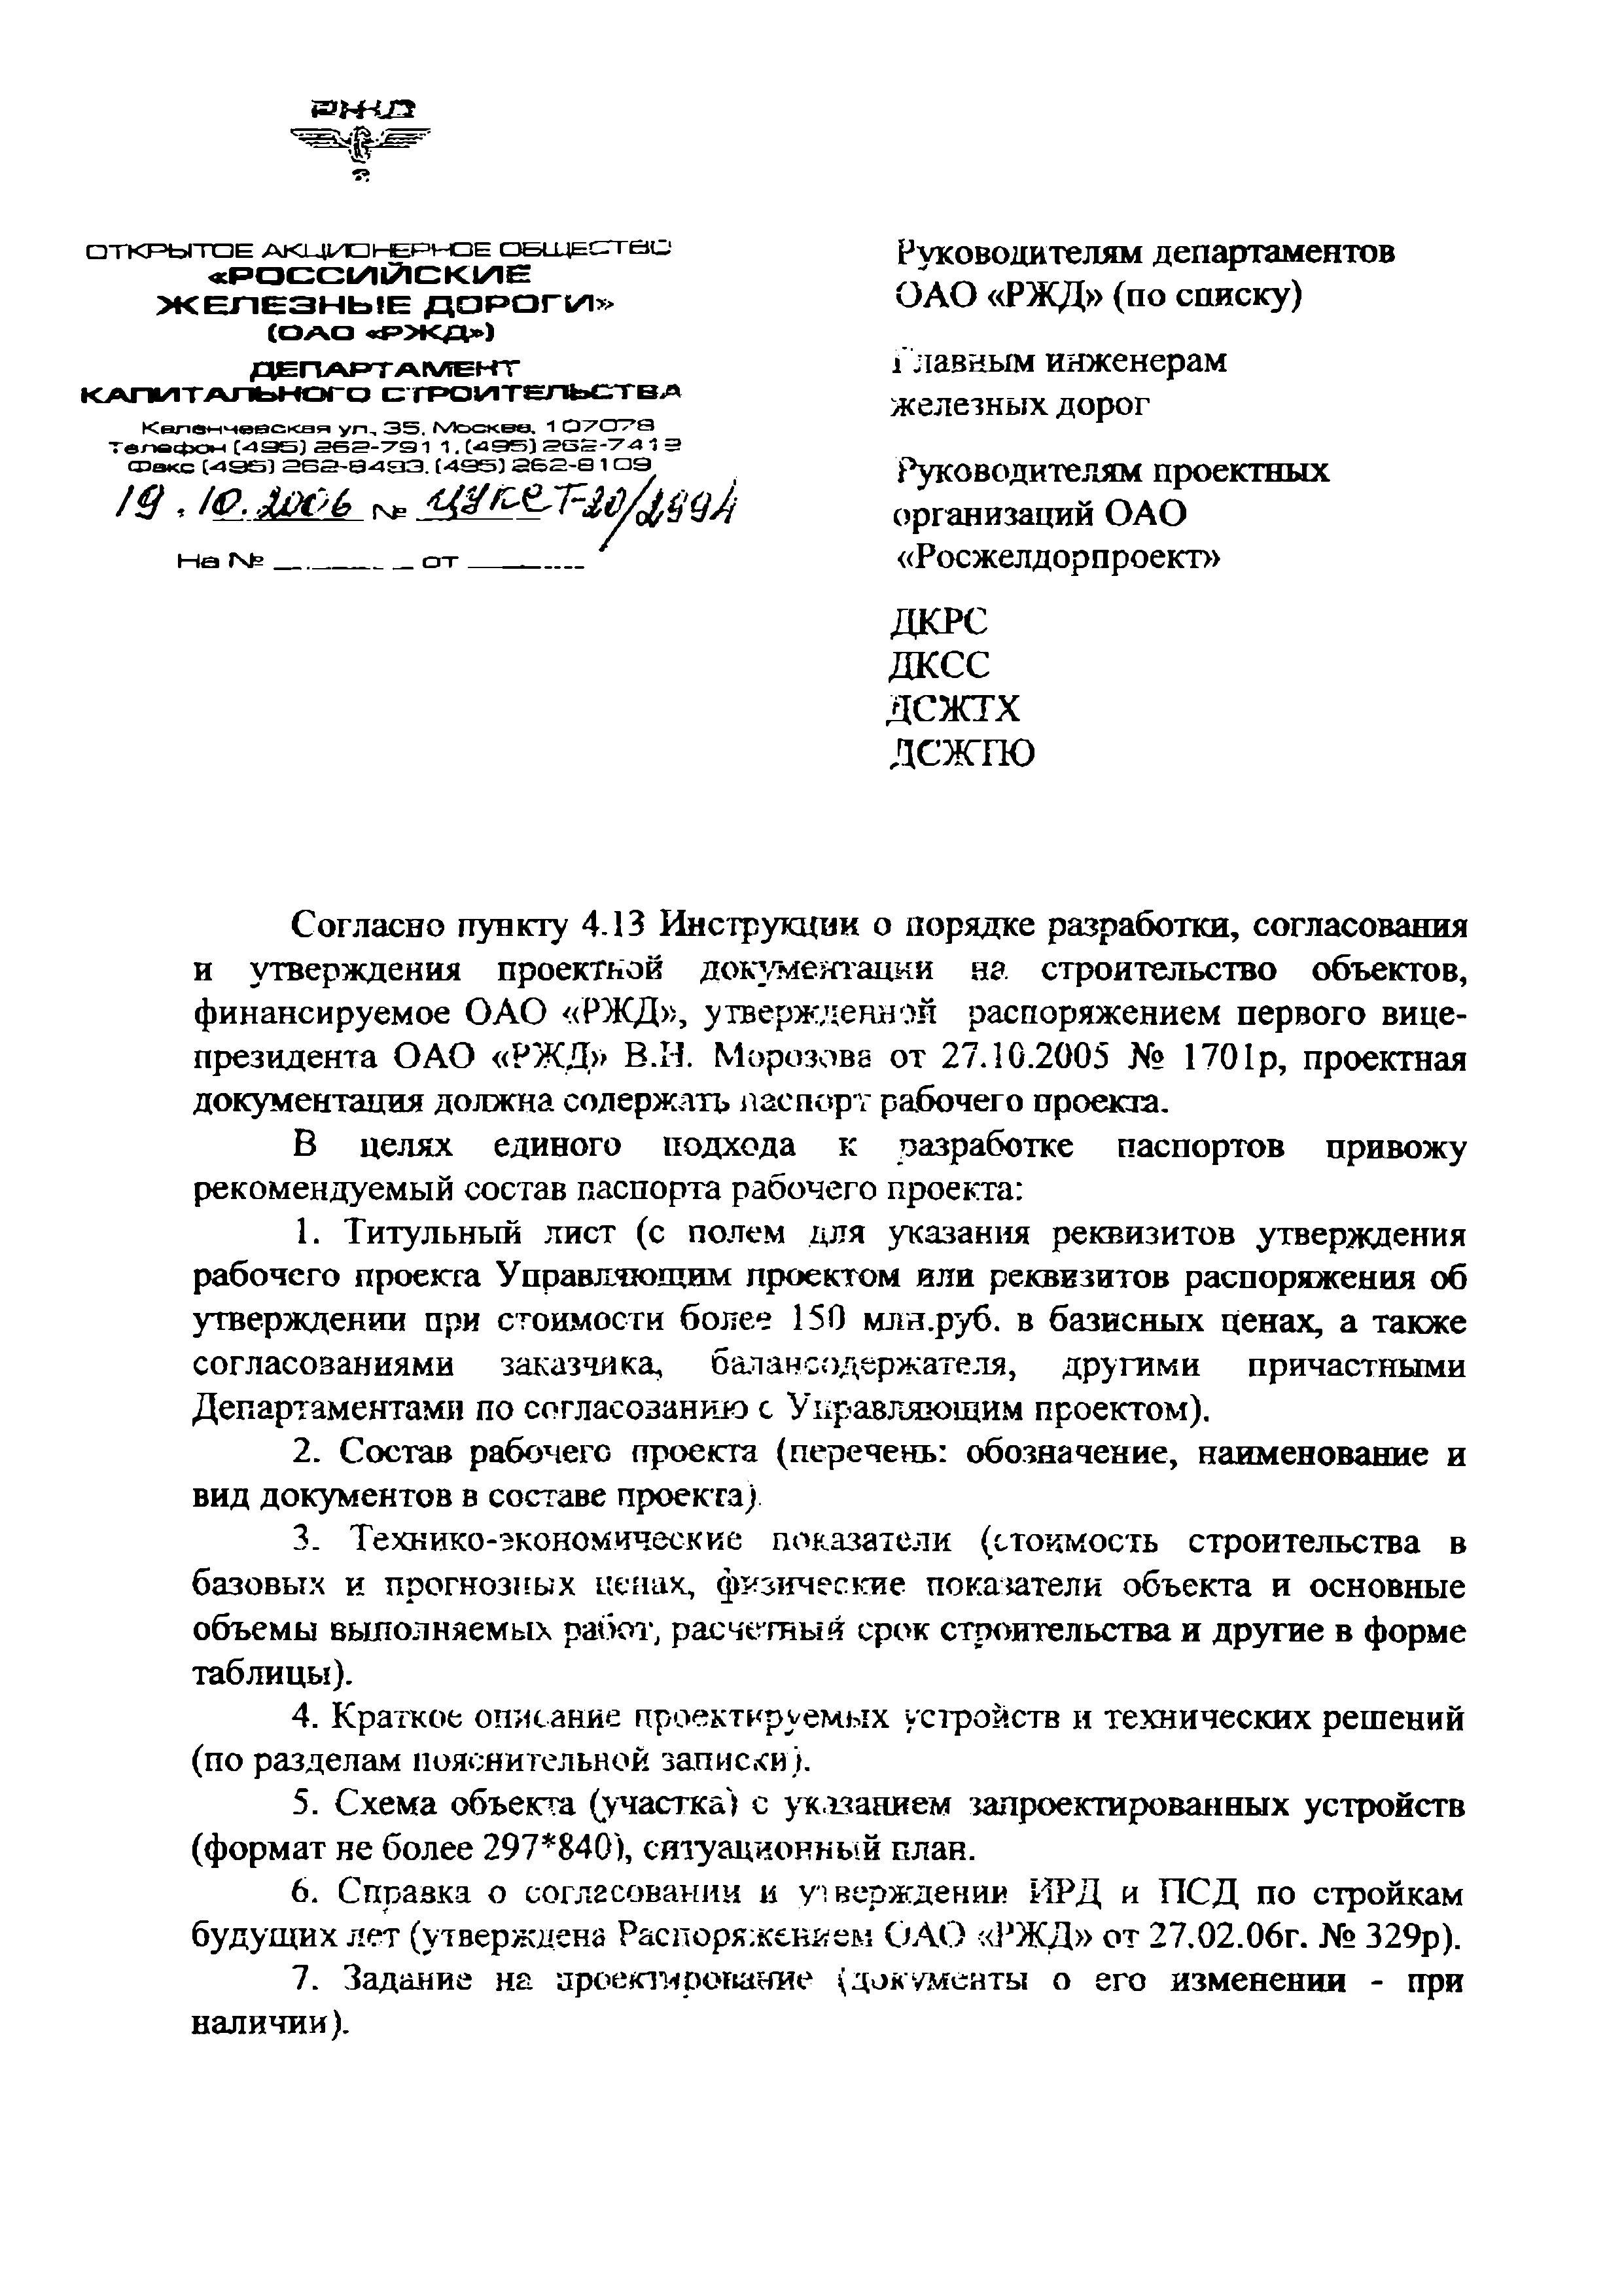 Письмо ЦУКСТ-20/2994